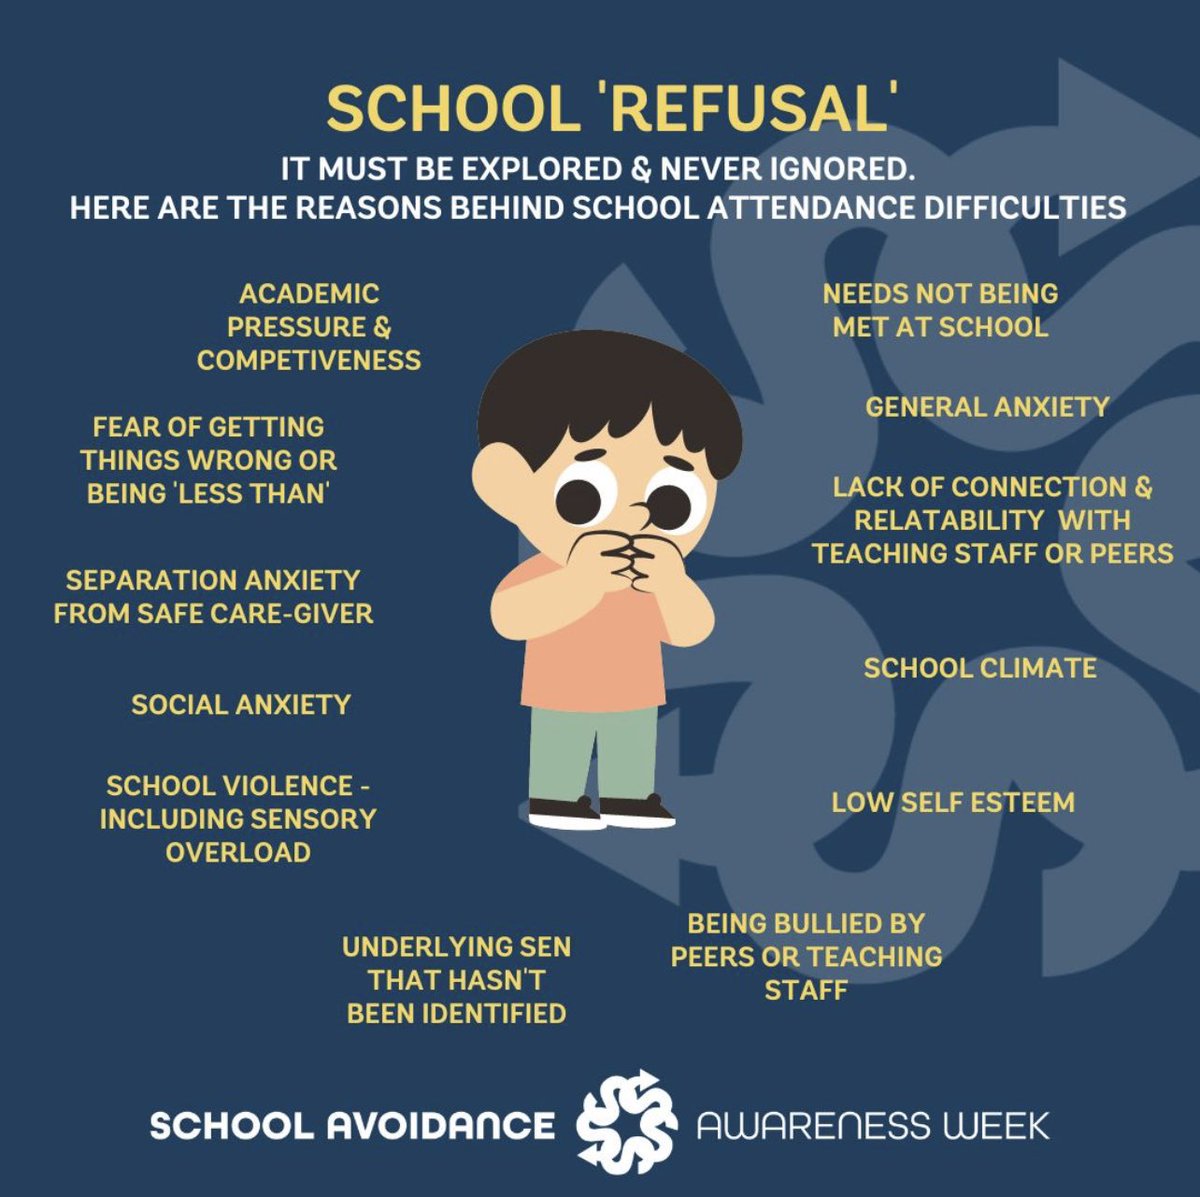 #SchoolRefusal schoolavoidance.co.uk/resources